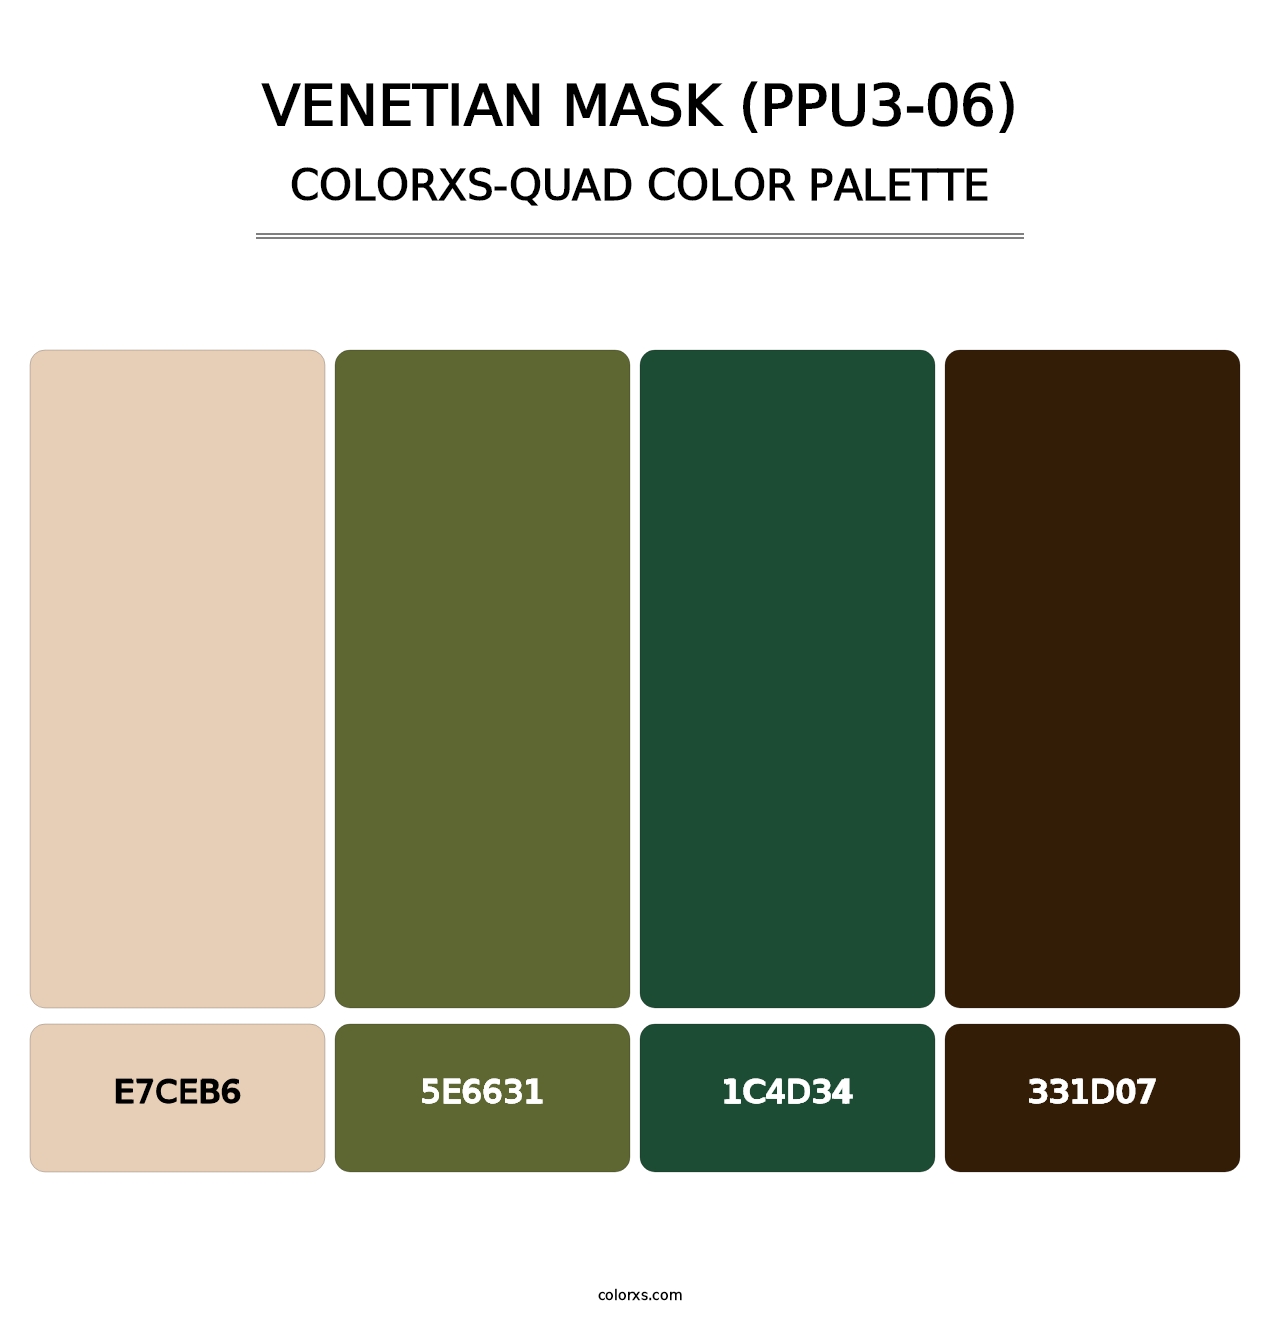 Venetian Mask (PPU3-06) - Colorxs Quad Palette